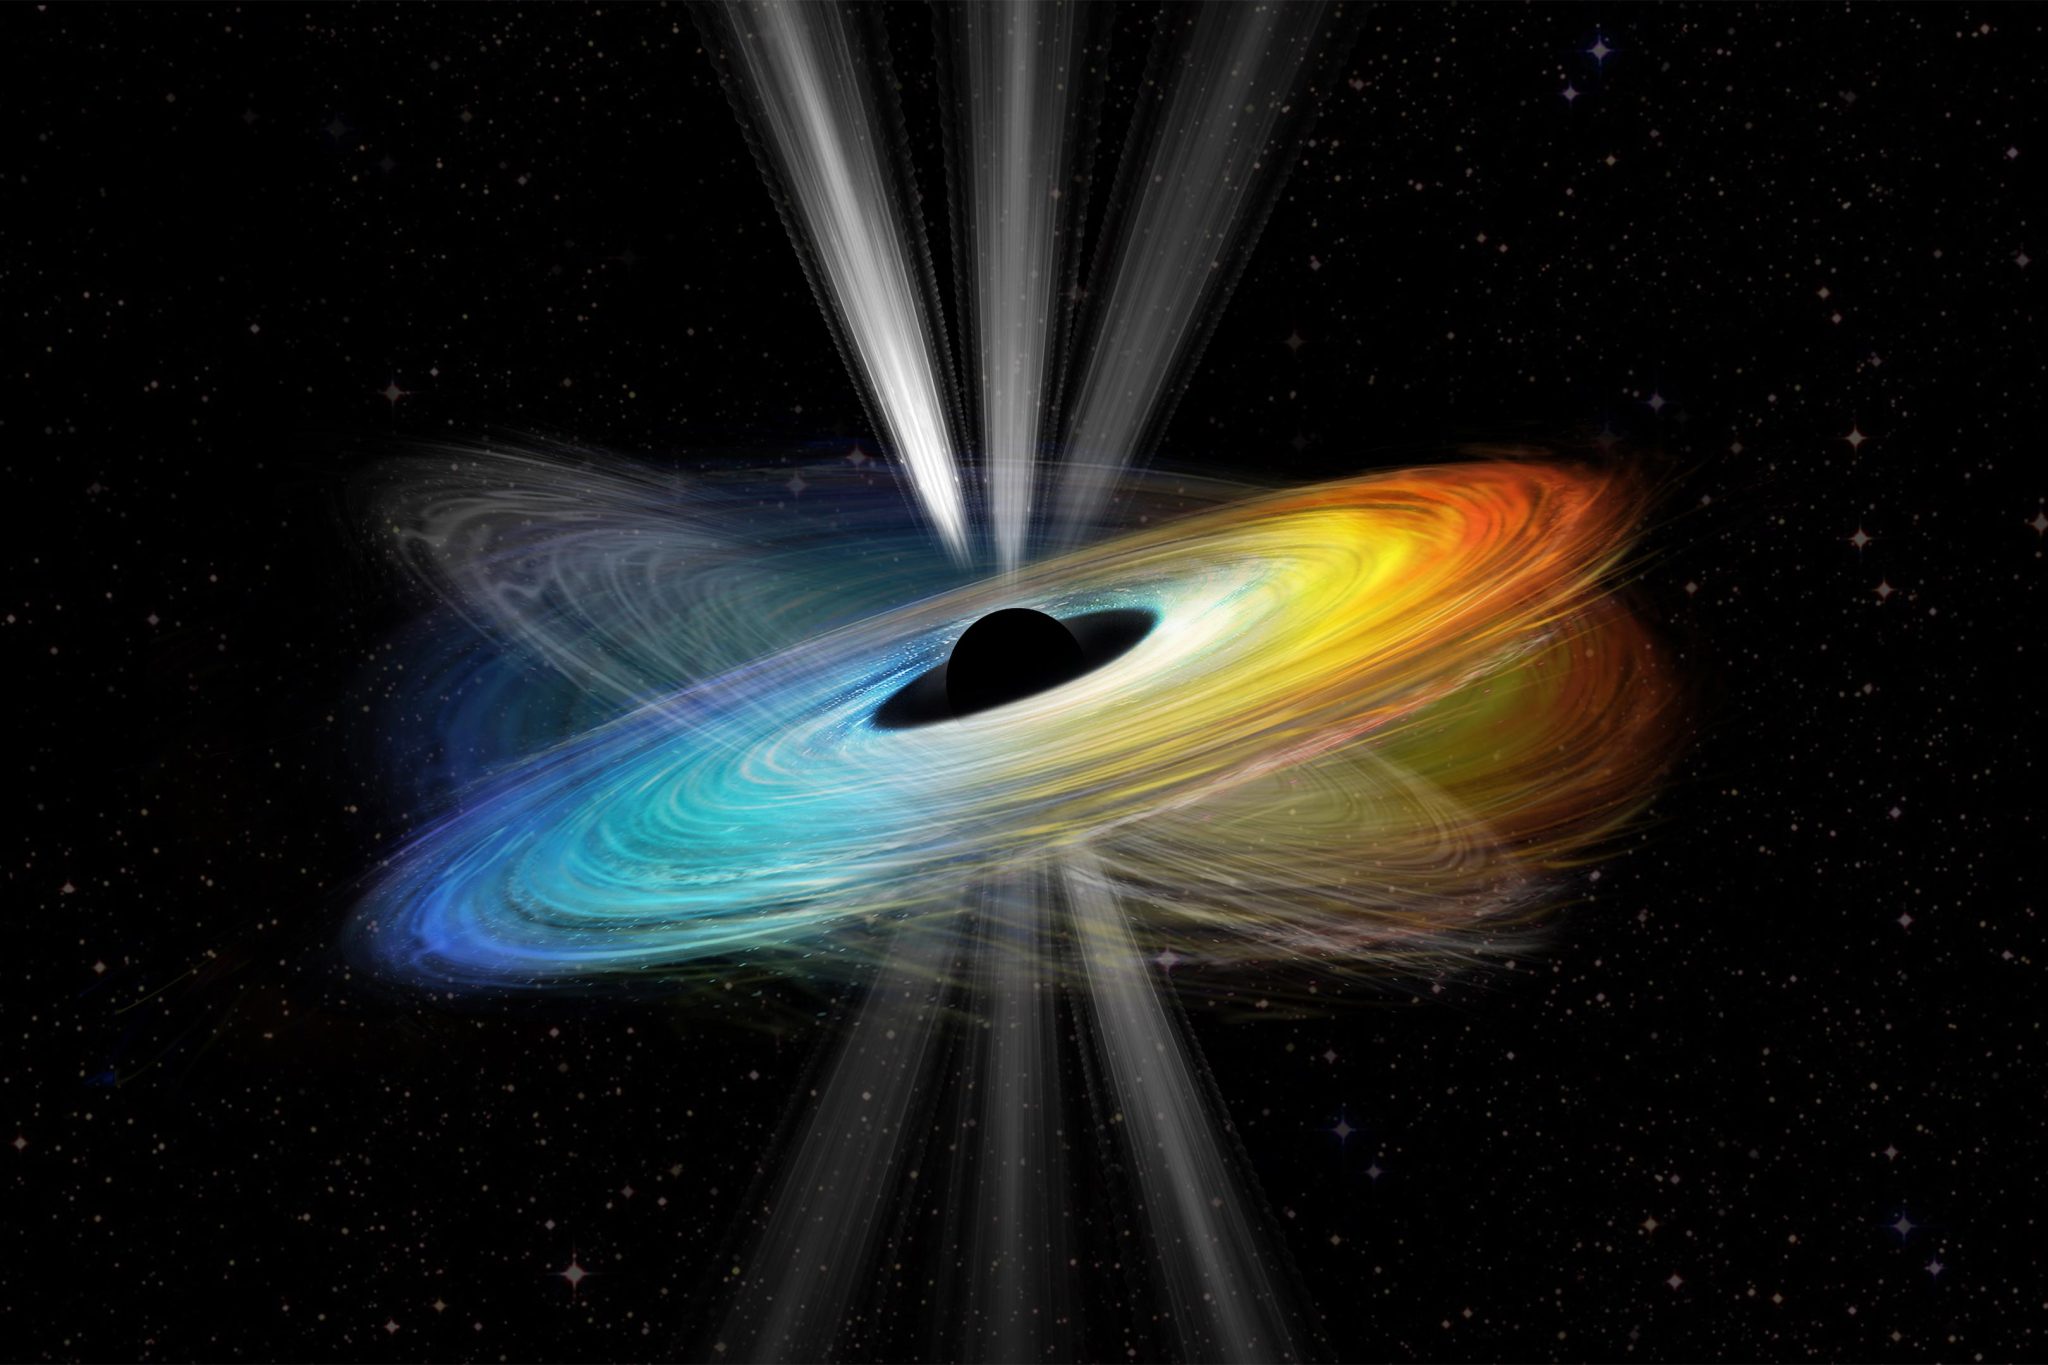 Se verifica la rotación de un agujero negro supermasivo: brilla la teoría de la relatividad general de Einstein